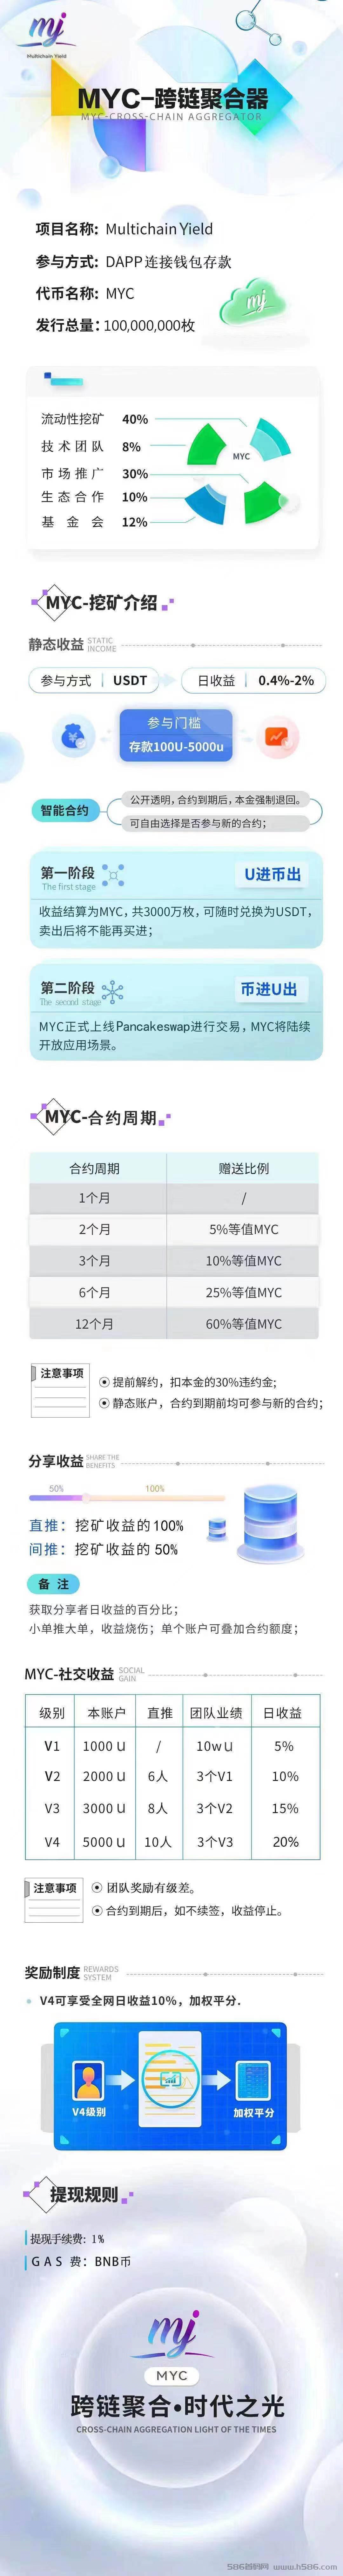 MYC—DEFI聚合器存U赚U智能合约，利润高达460%自动到账,安全稳定随存随取。